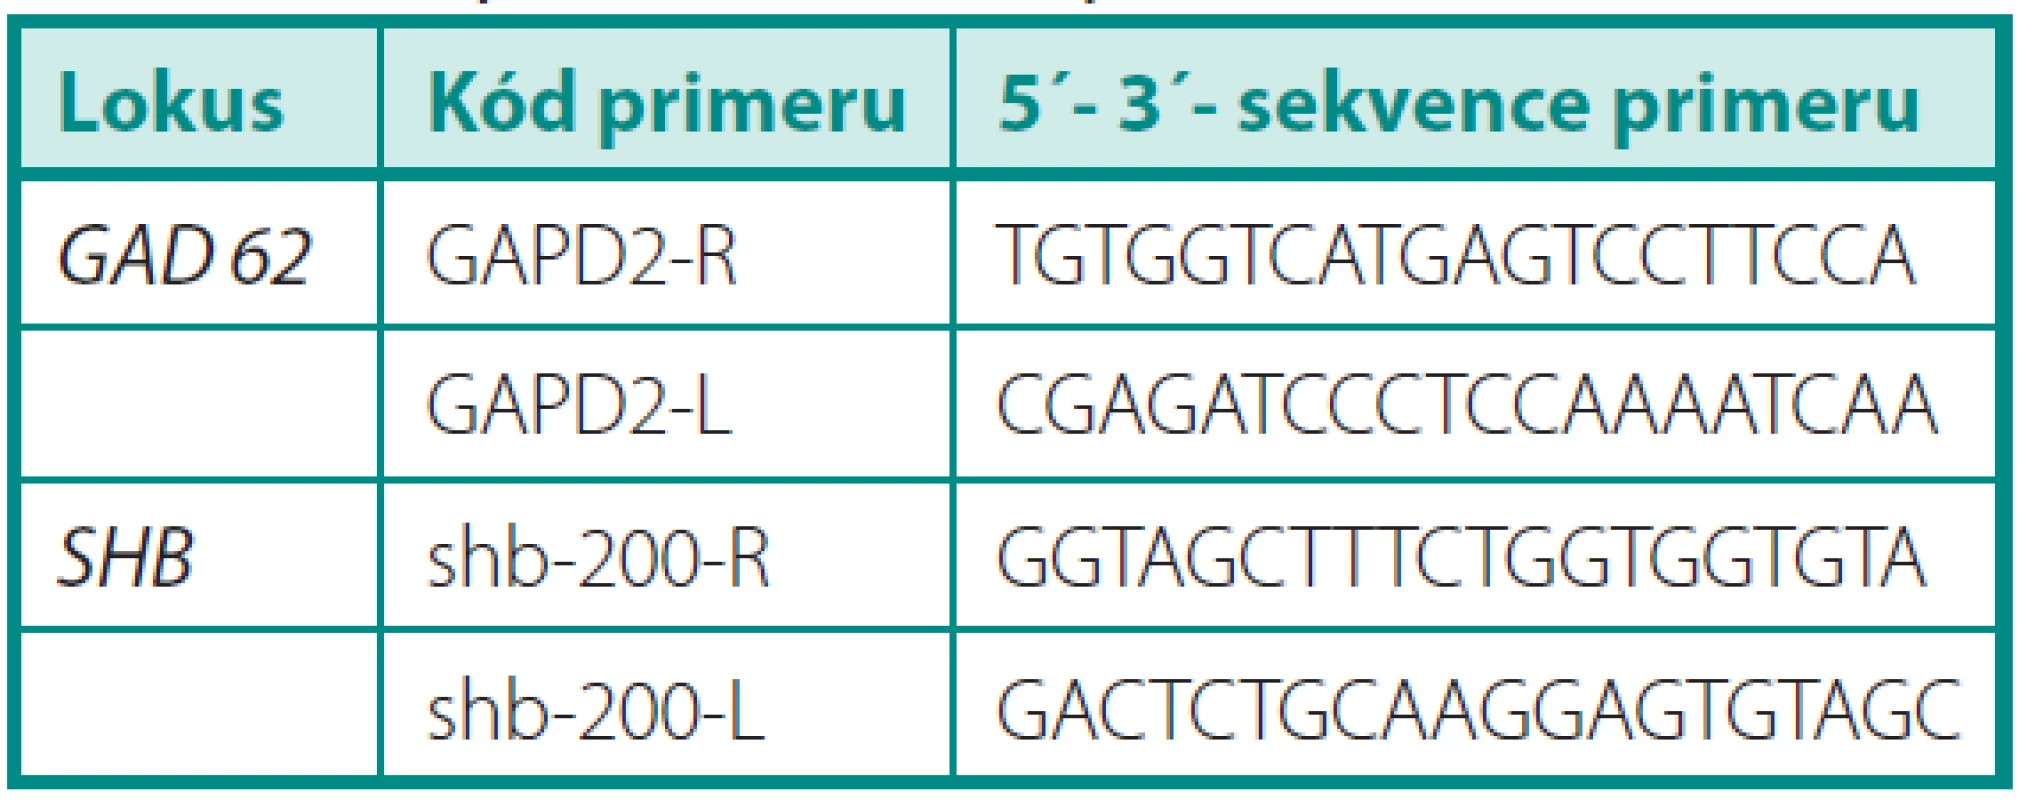 Sekvence primerů použitých v této práci
Table 1. Sequences of used primers